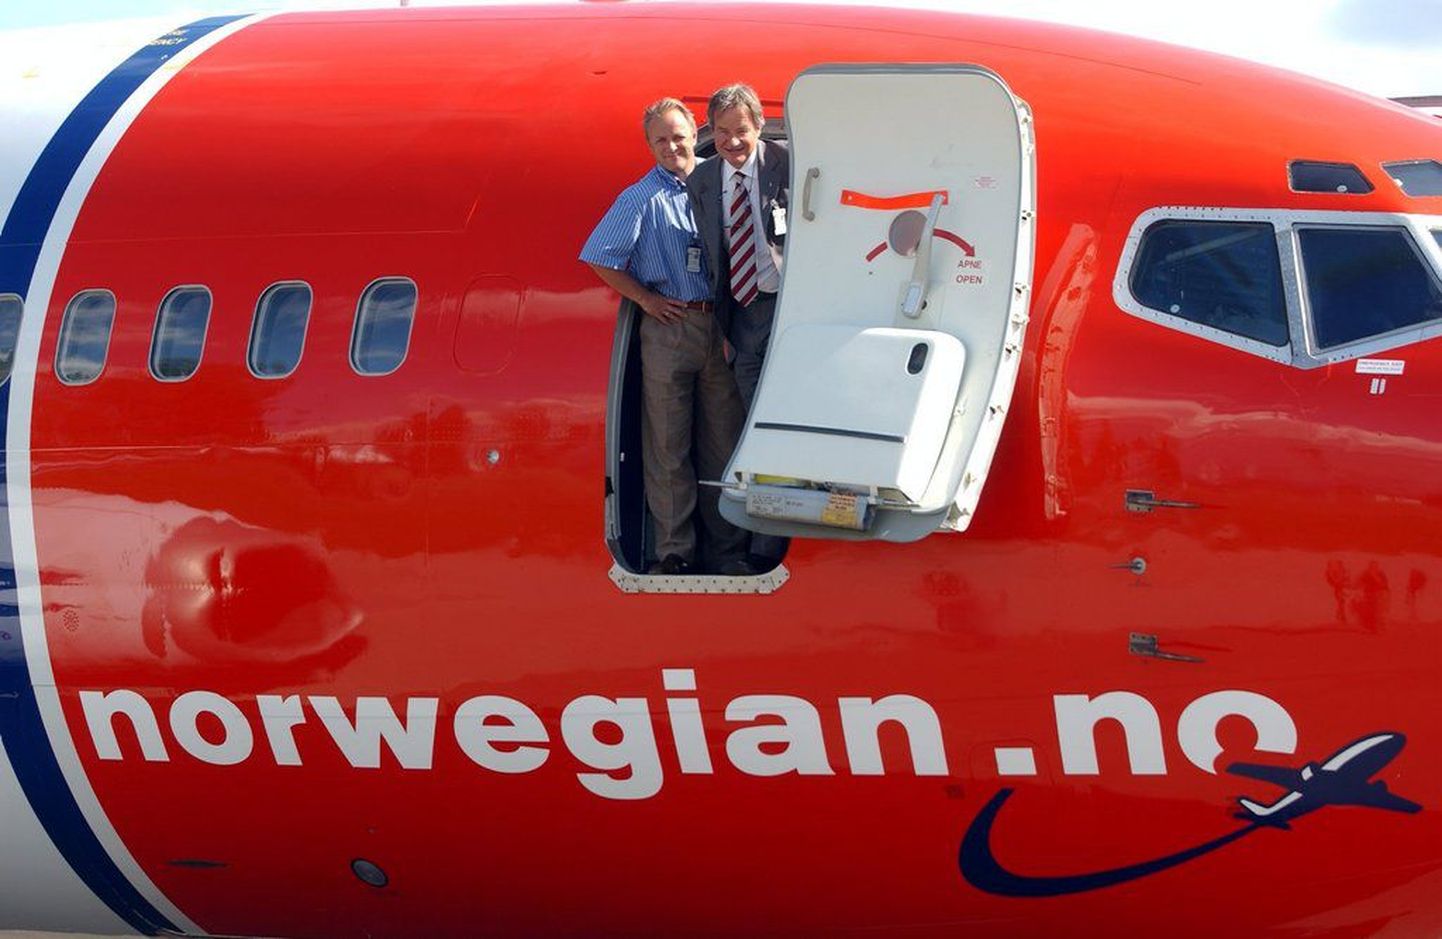 Odavlennu ettevõtte Norwegian lennuk